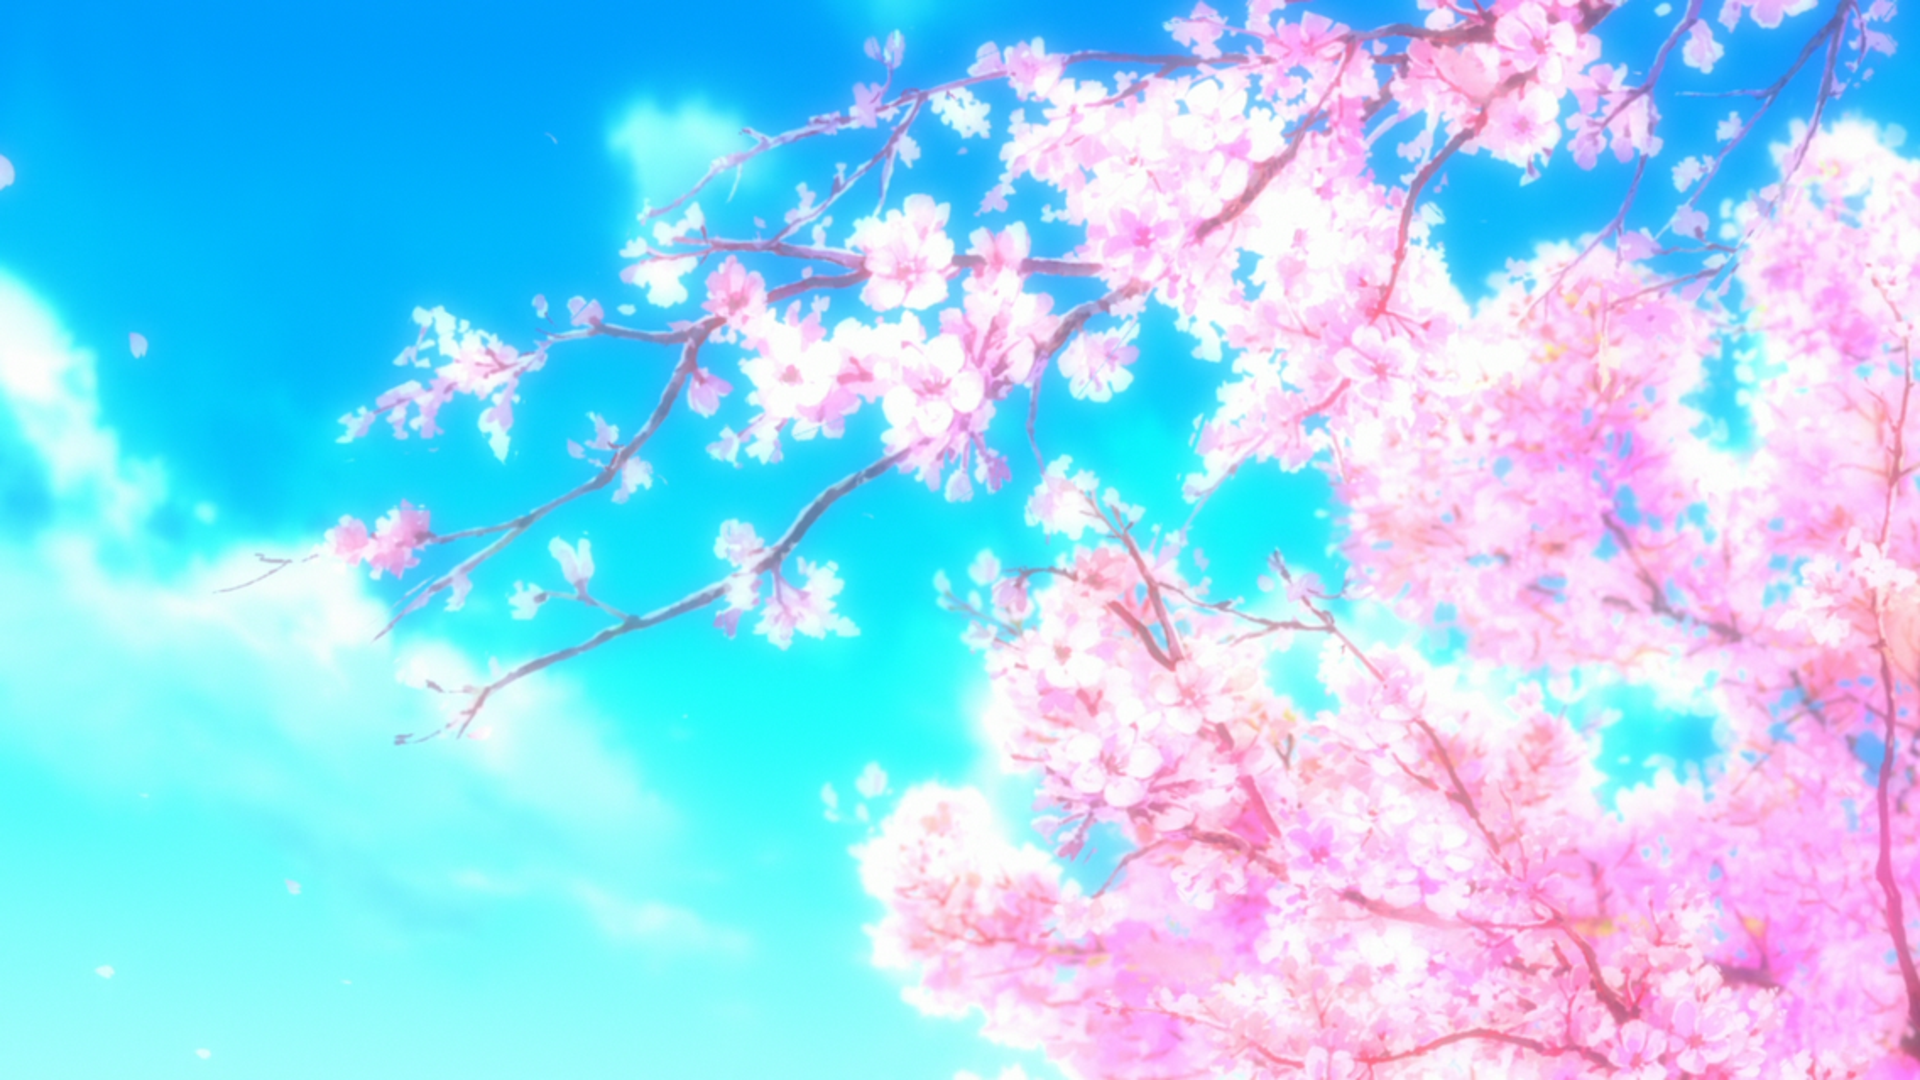 more discrete anime wallpaper!. Anime scenery wallpaper, Anime cherry blossom, Anime background wallpaper